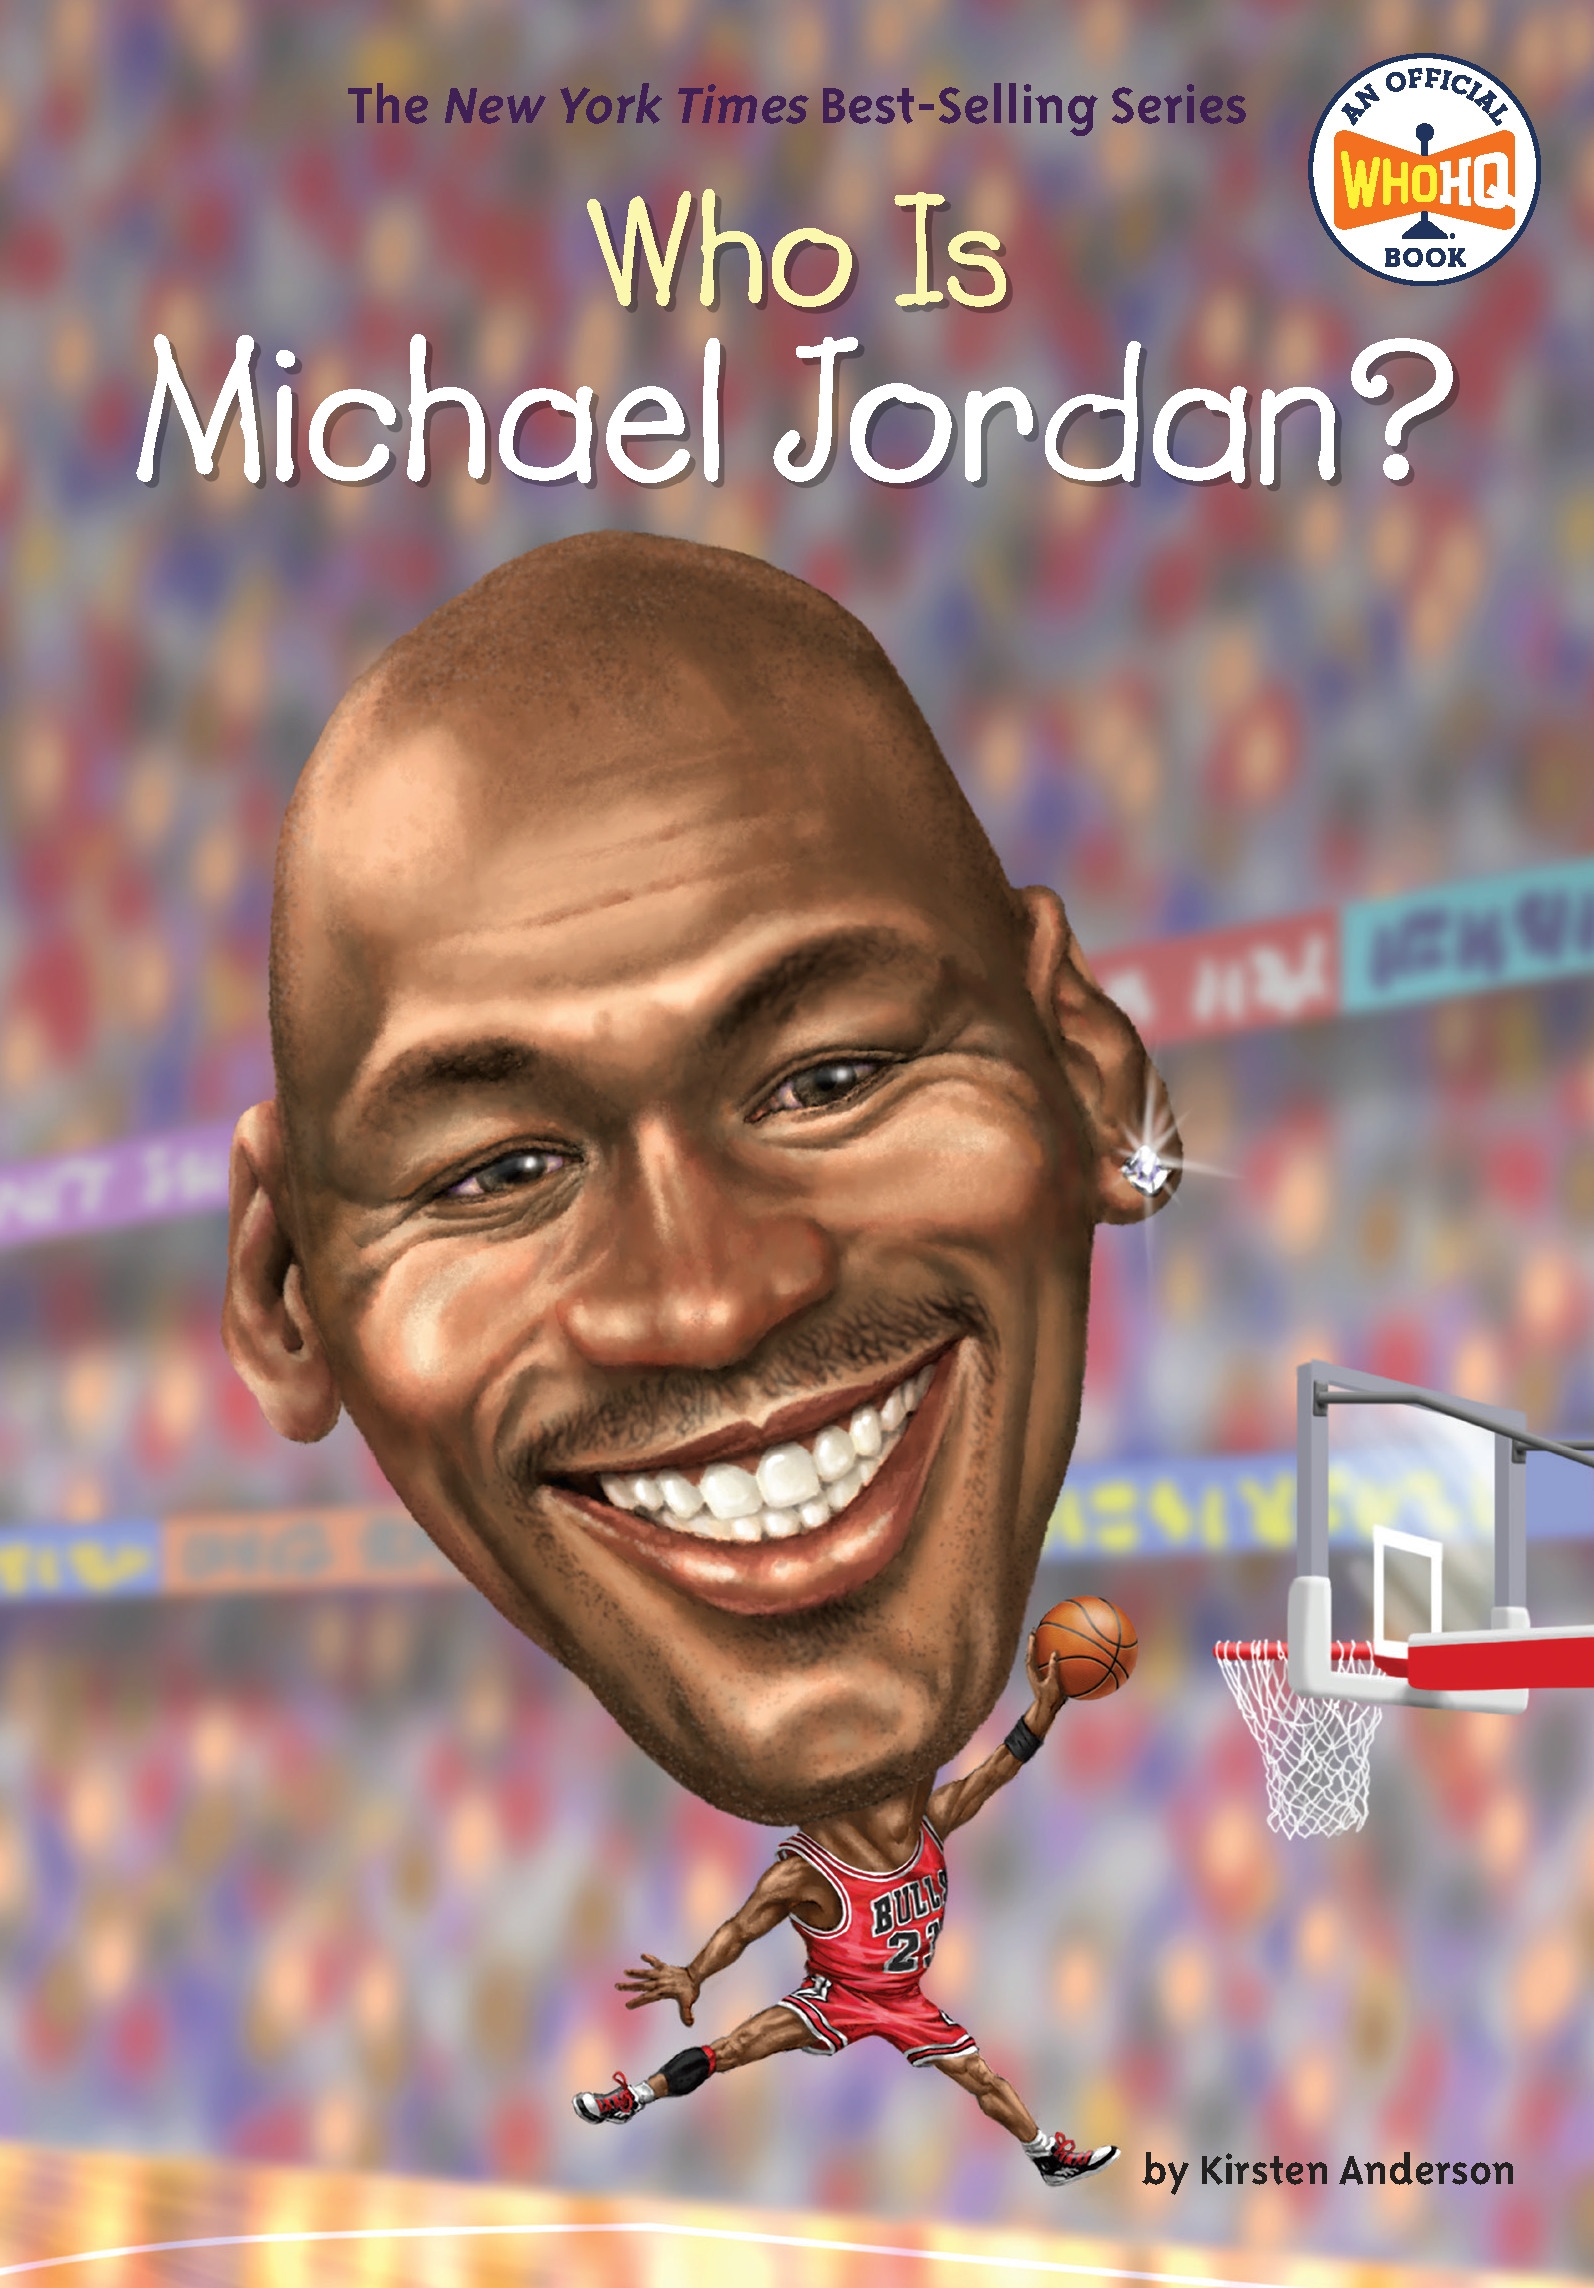 best michael jordan biography book